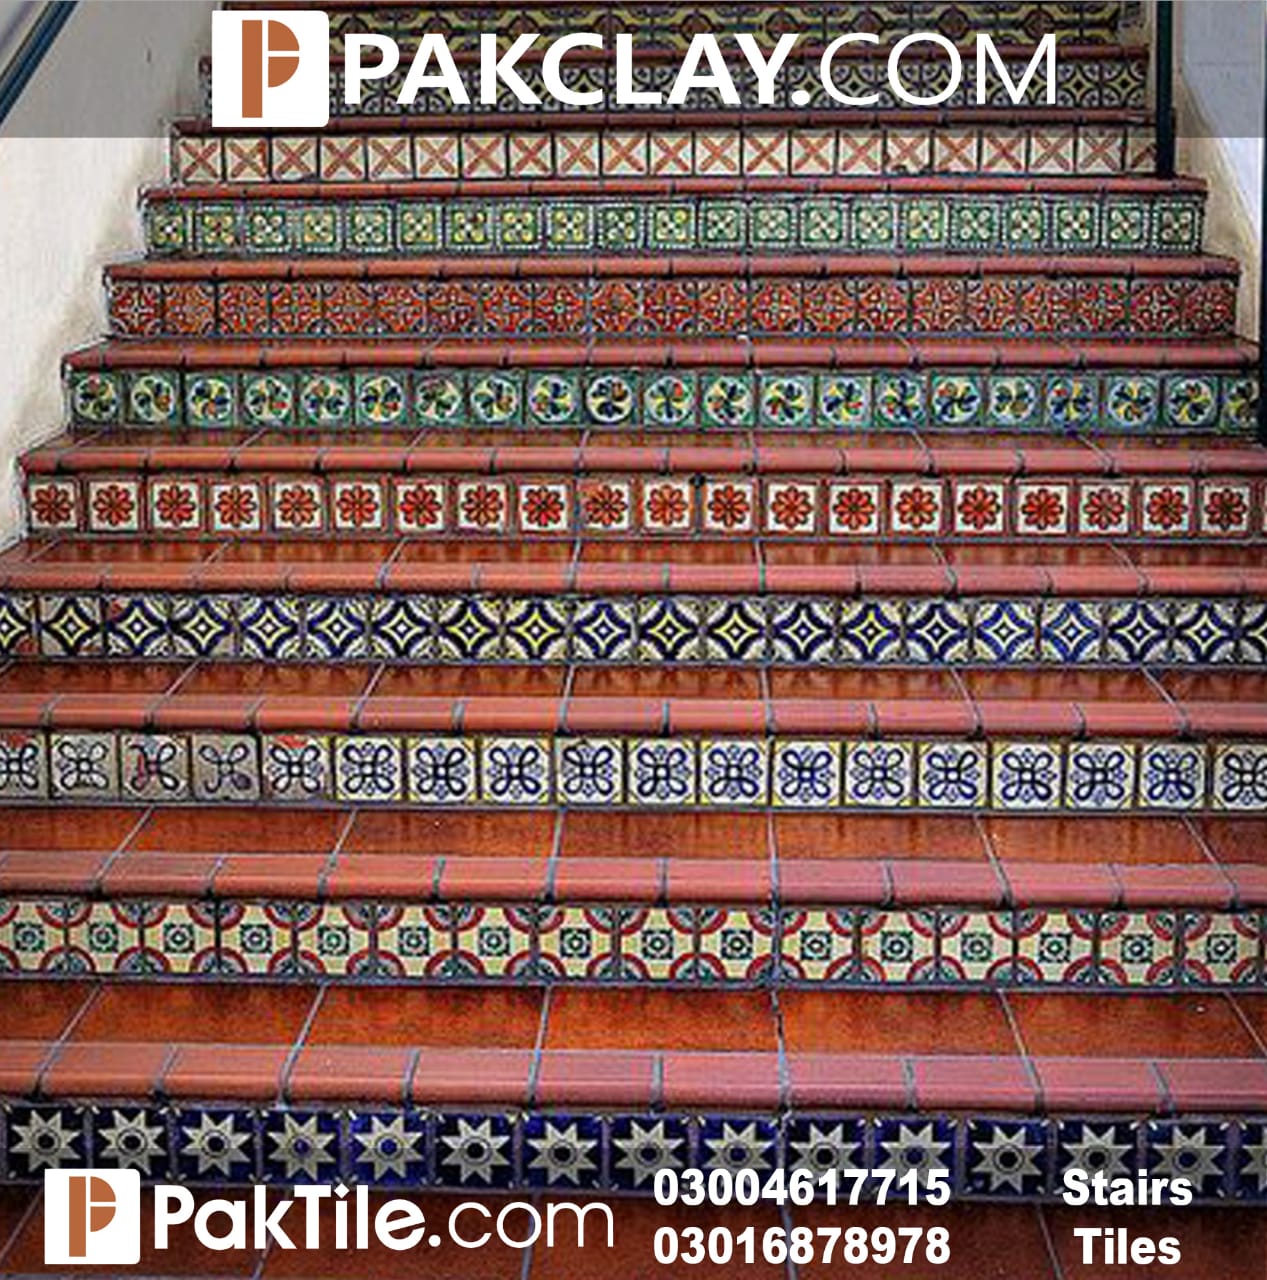 Pak Clay Stair Riser Mosaic Tiles